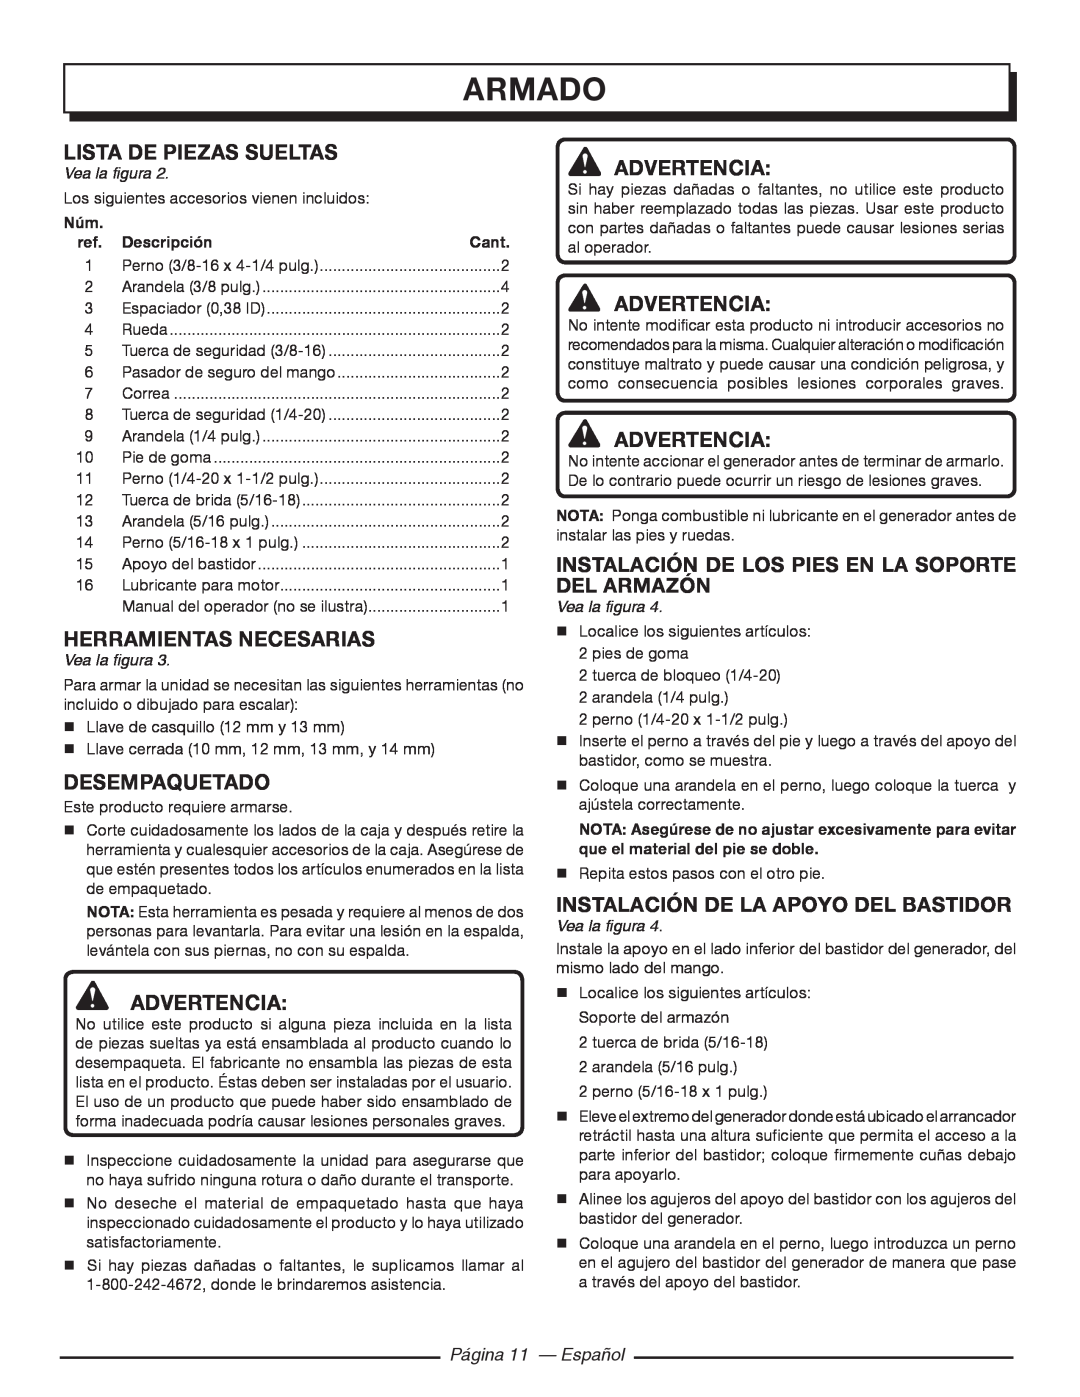 Homelite HGCA5700 Armado, Lista de piezas sueltas, Herramientas necesarias, Desempaquetado, Página 11 — Español 